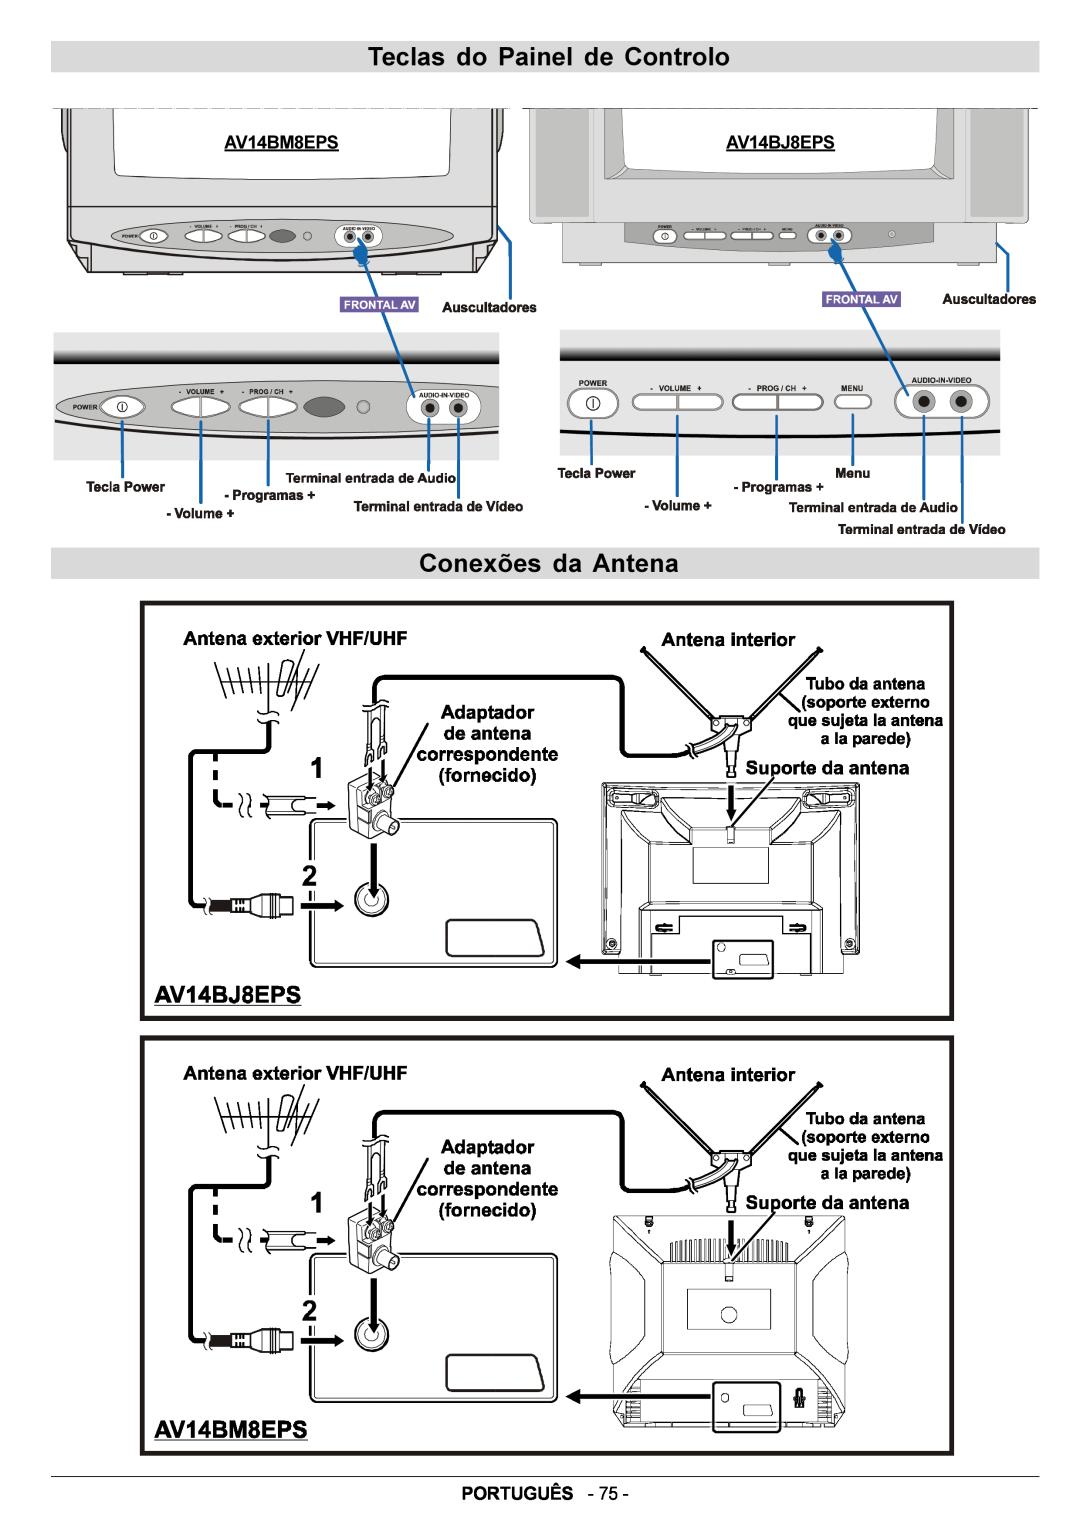 JVC AV14BJ8EPS manual Teclas do Painel de Controlo, Conexões da Antena, Português 